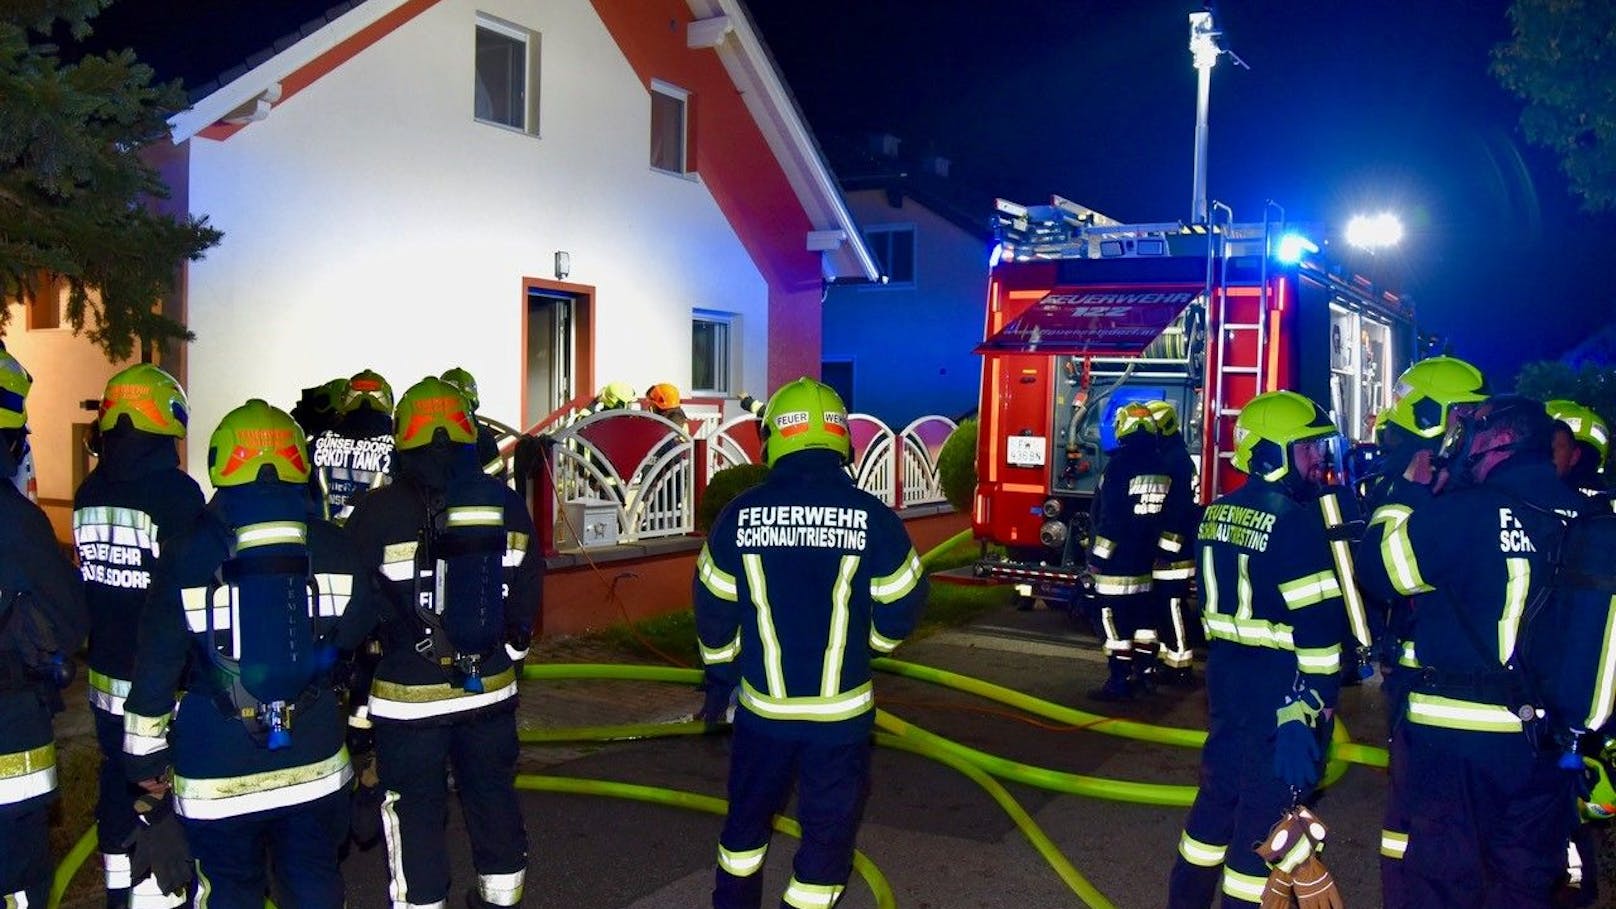 Feuerwehr rettete Bewohner aus brennendem Haus